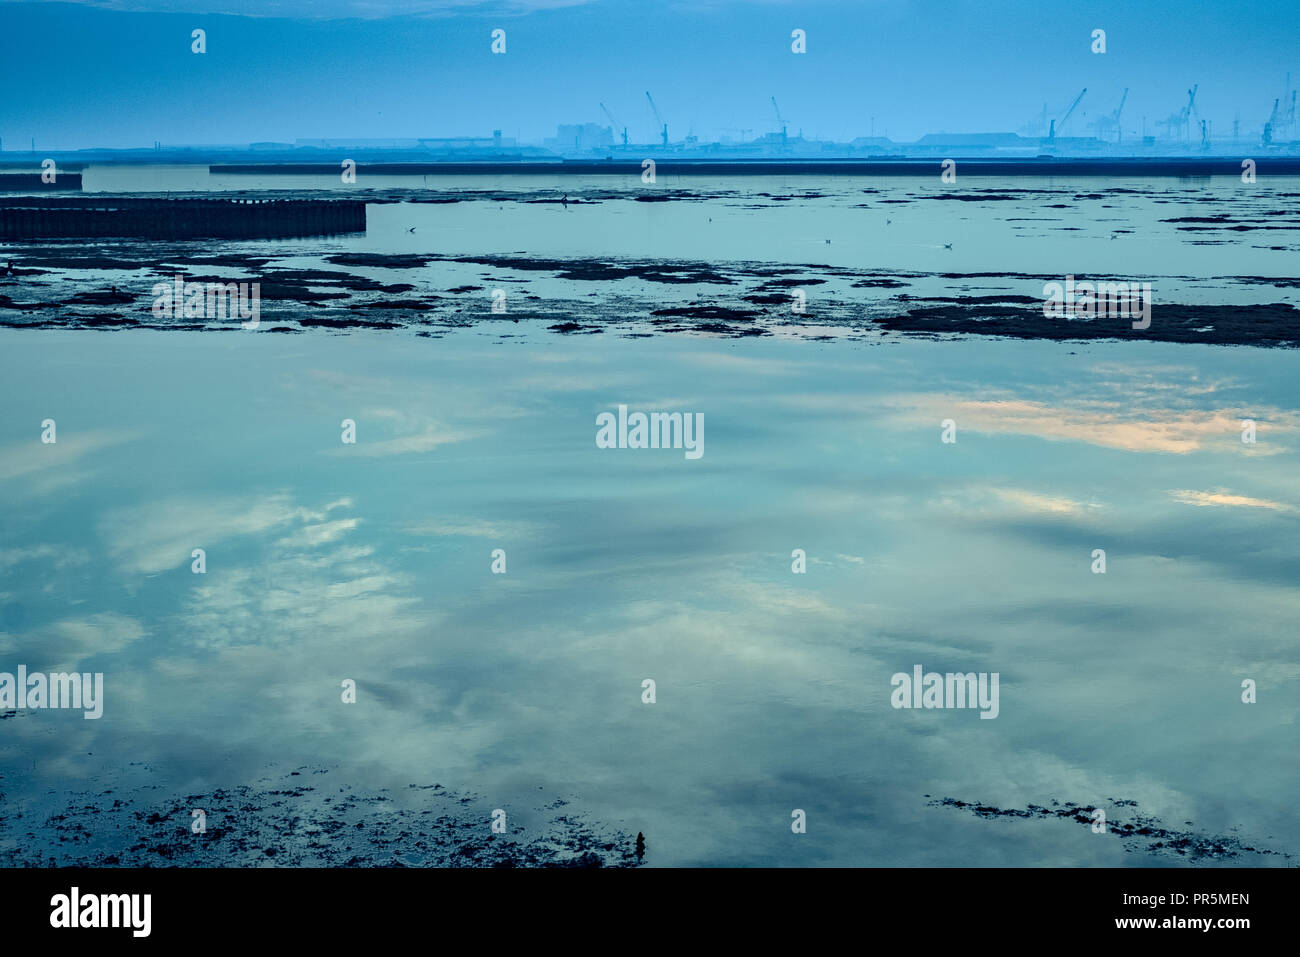 Der Himmel ist in der Lagune wider, eine industrielle Hafen im Hintergrund. Stockfoto